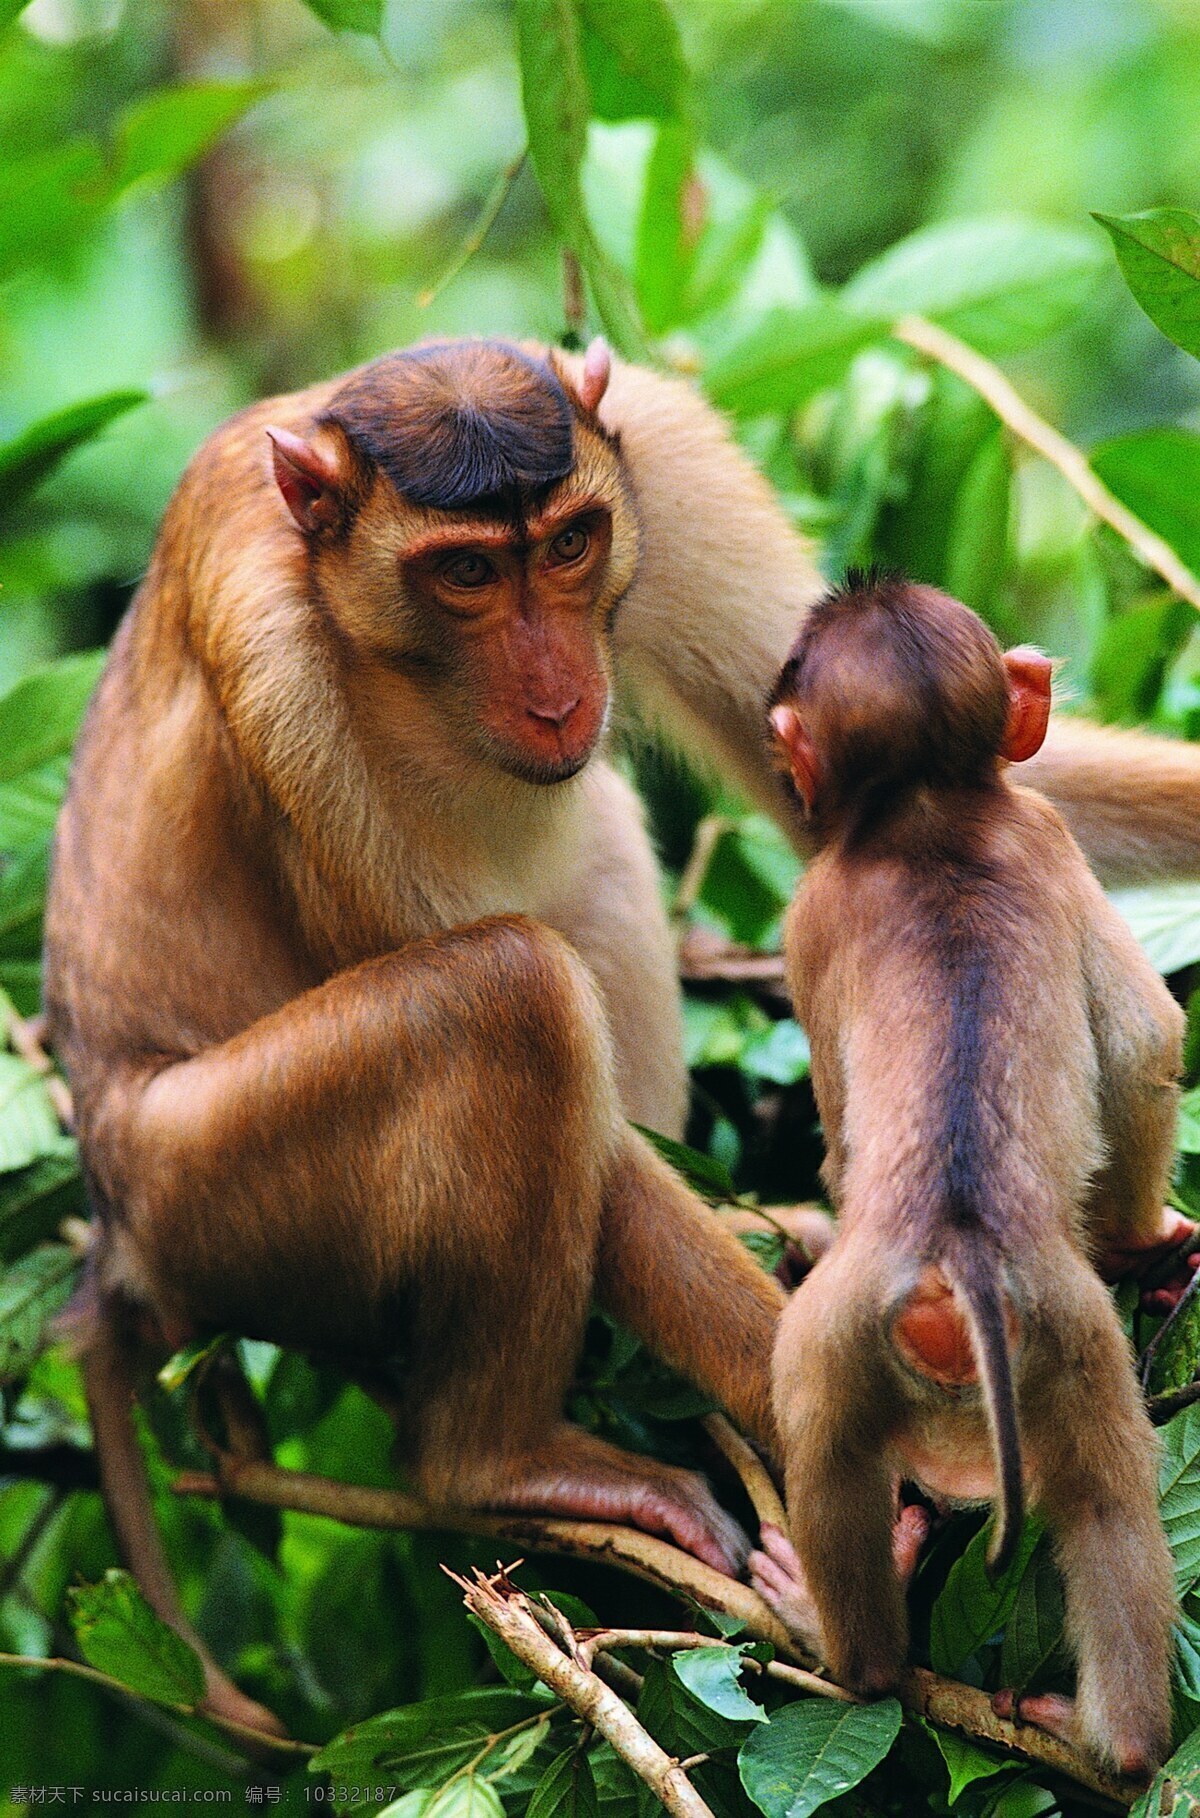 猿类 猿人 猿科动物 动物 猴子 猿